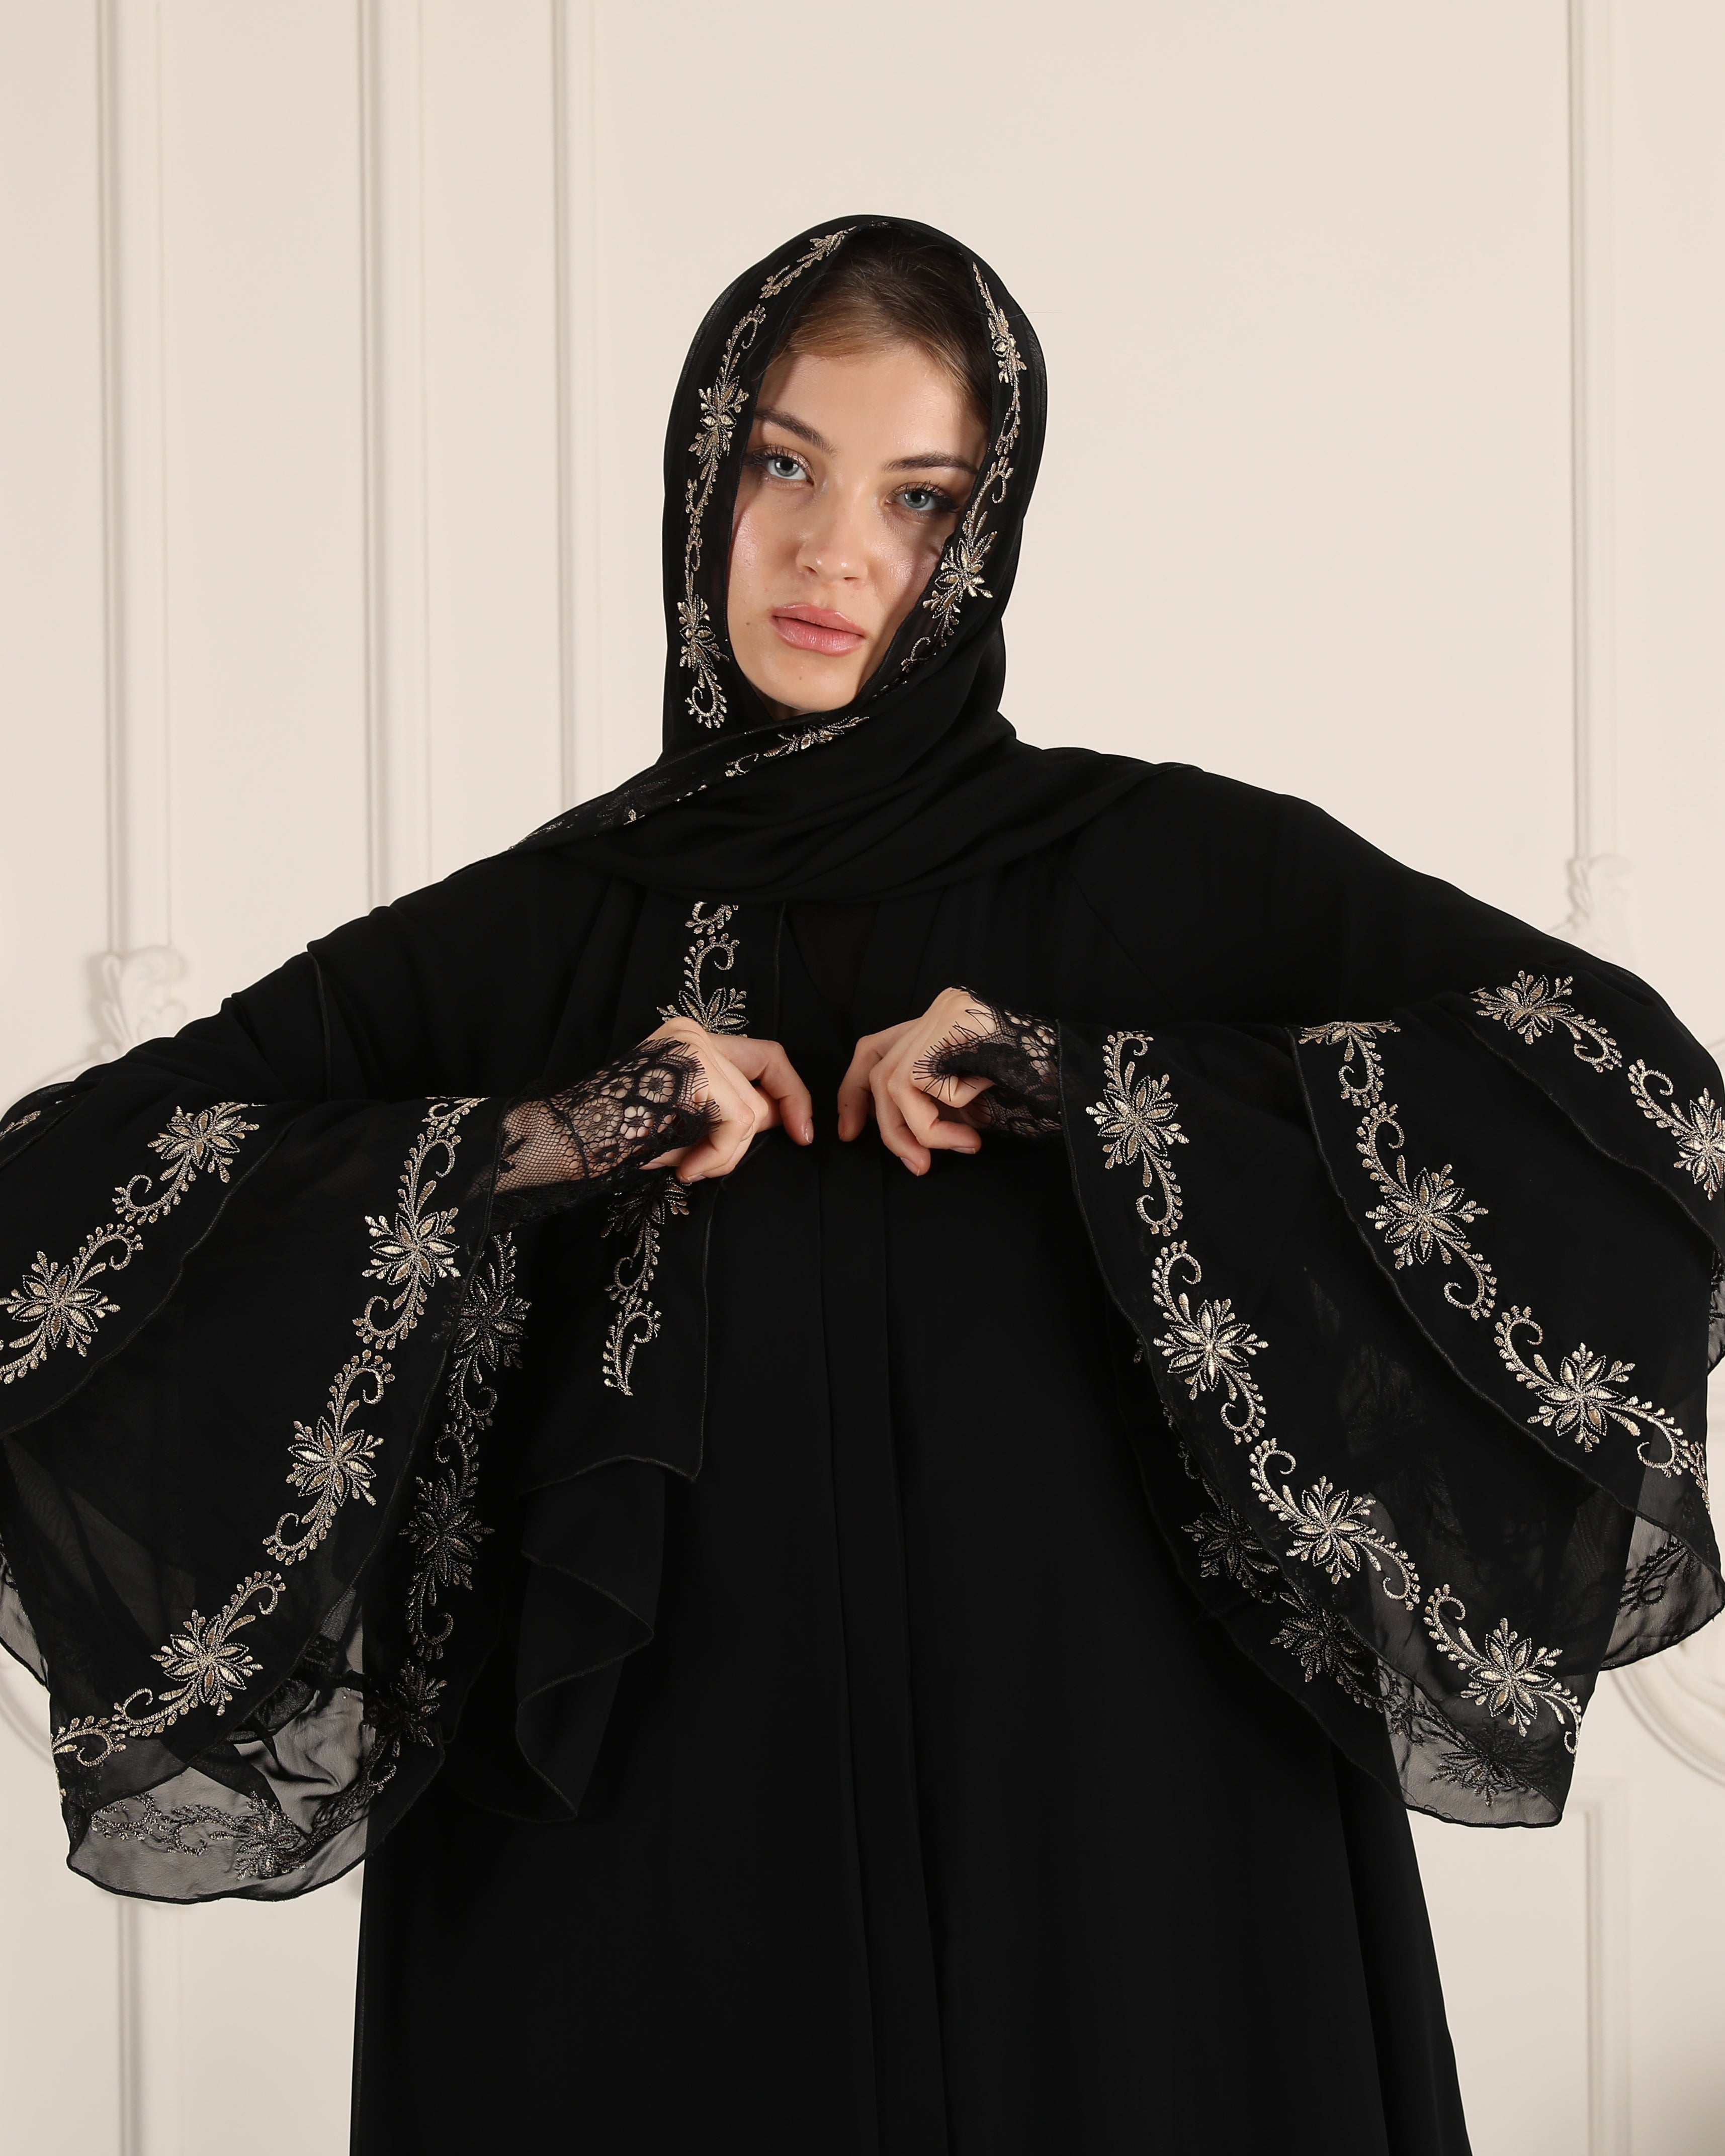 Chiffon 3 layered abaya black without stonesChiffon 3 layered abaya bl